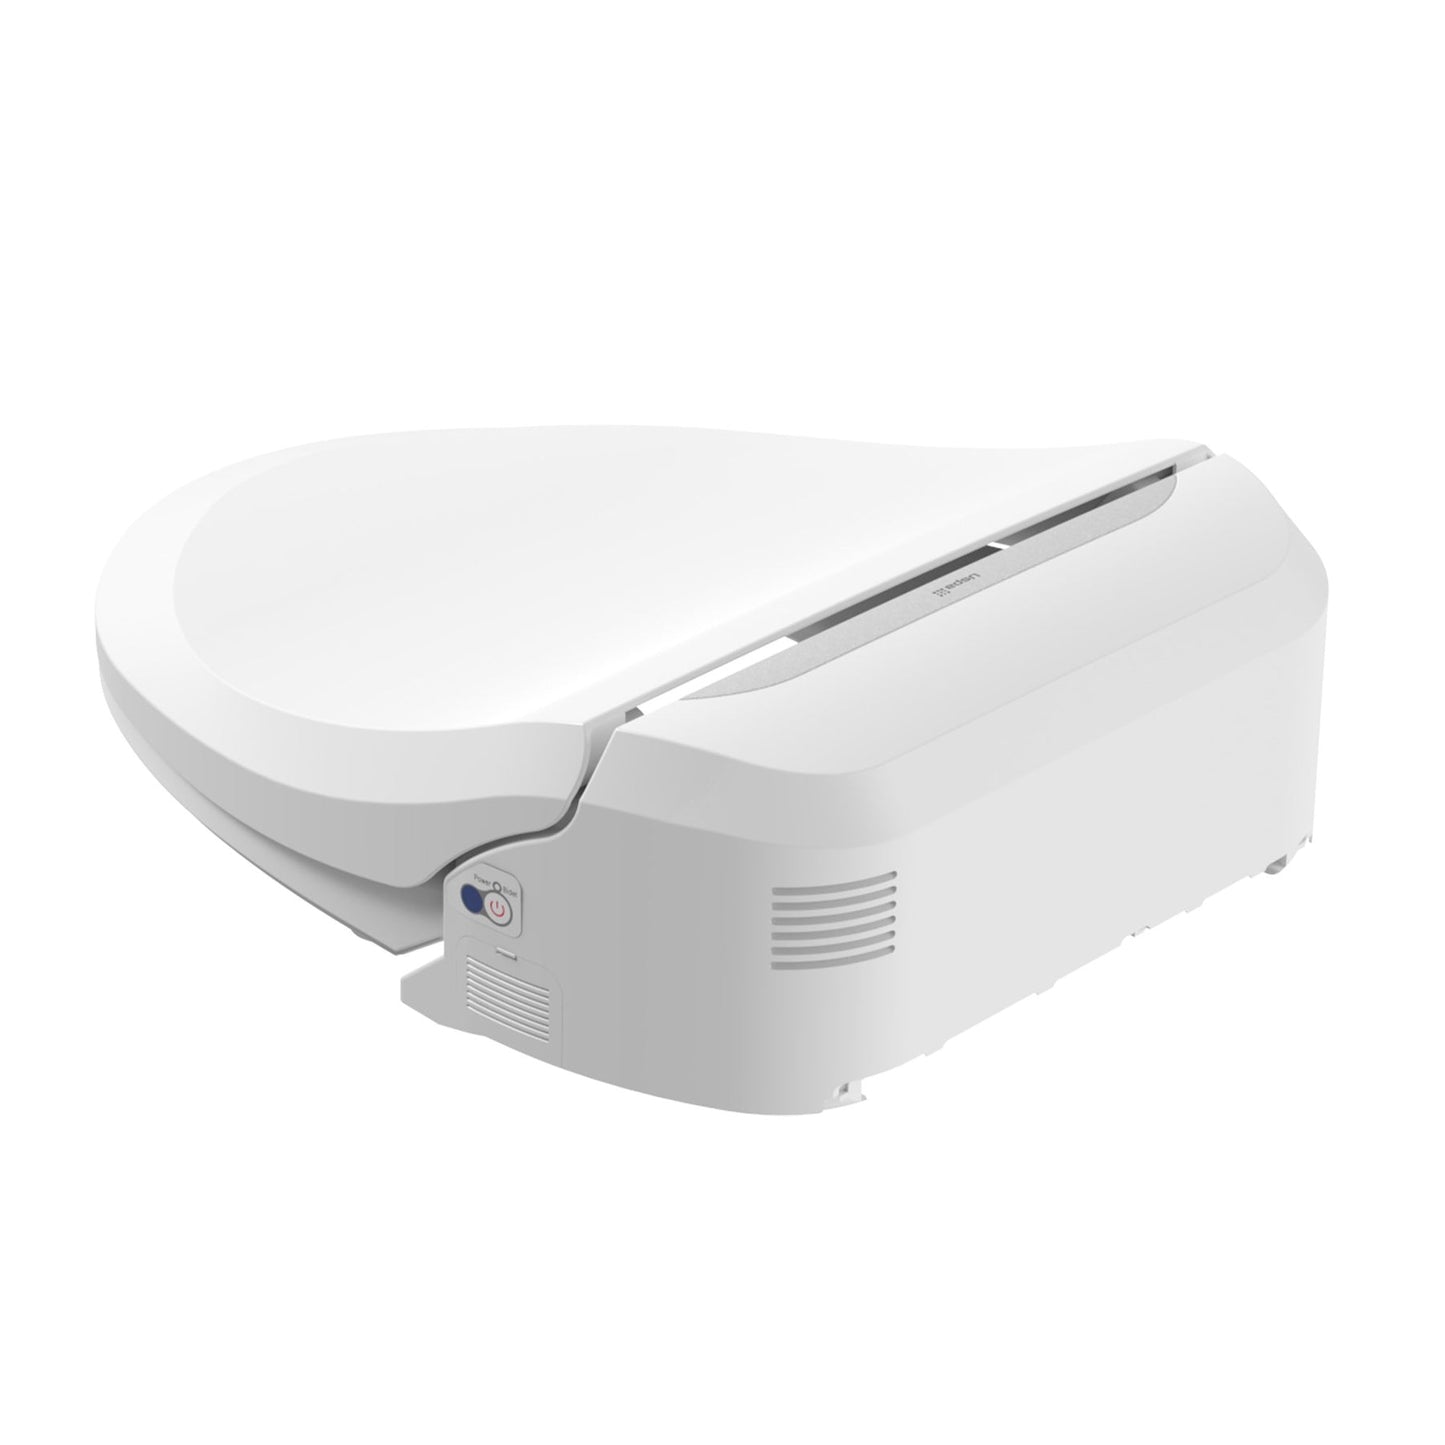 USPA Pro Bio Bidet Smart Toilet Seat